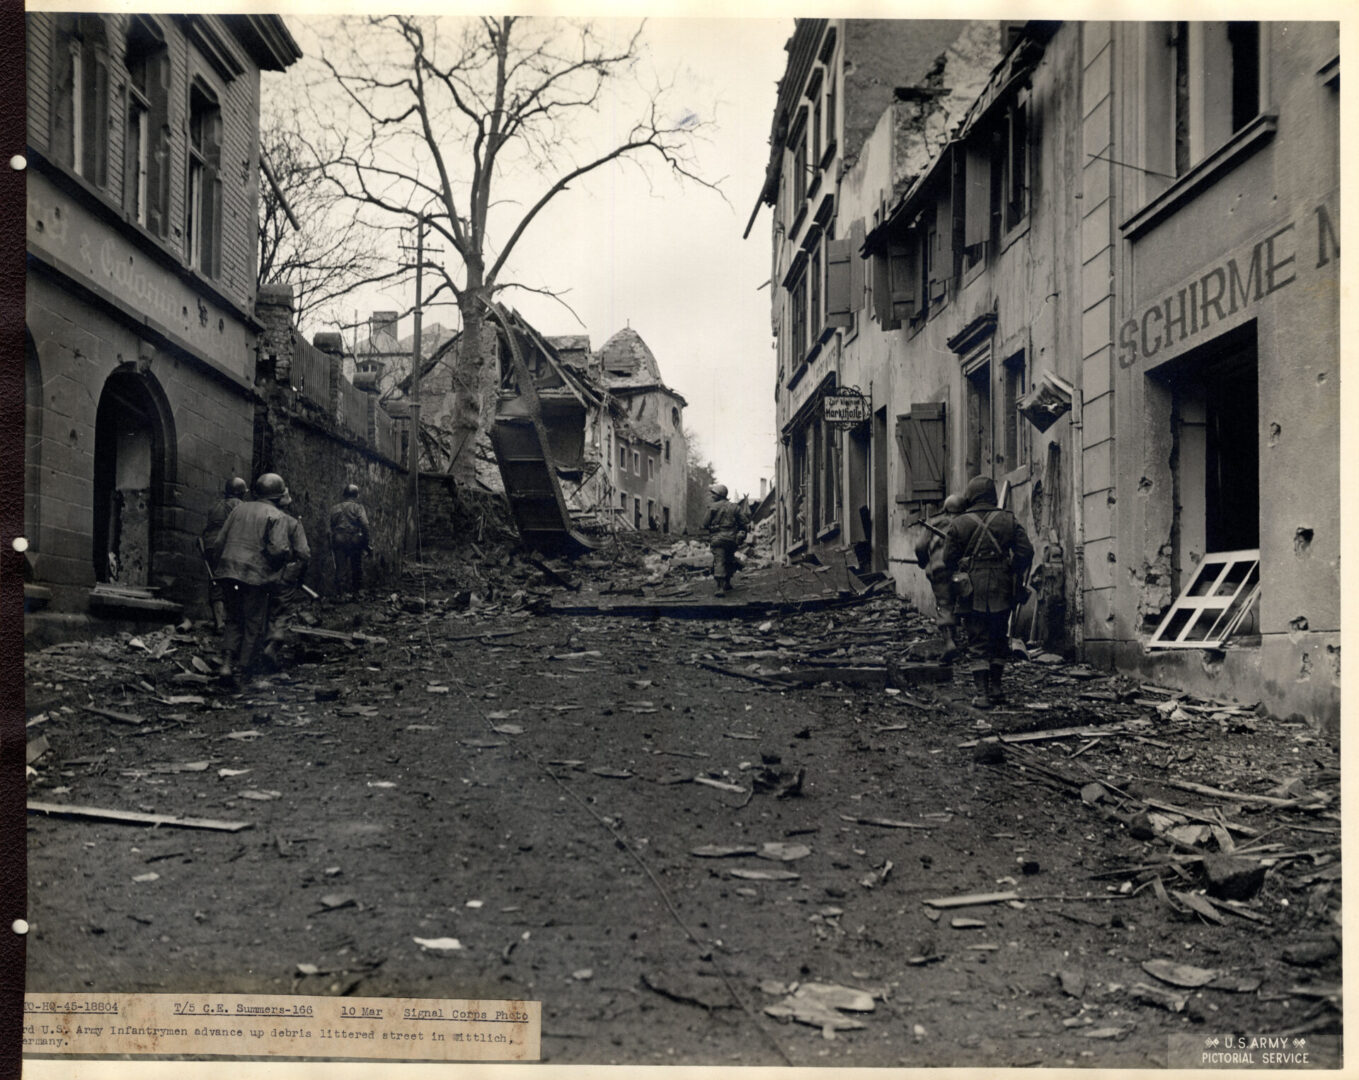 American infantrymen advance amidst debris in Wittlich